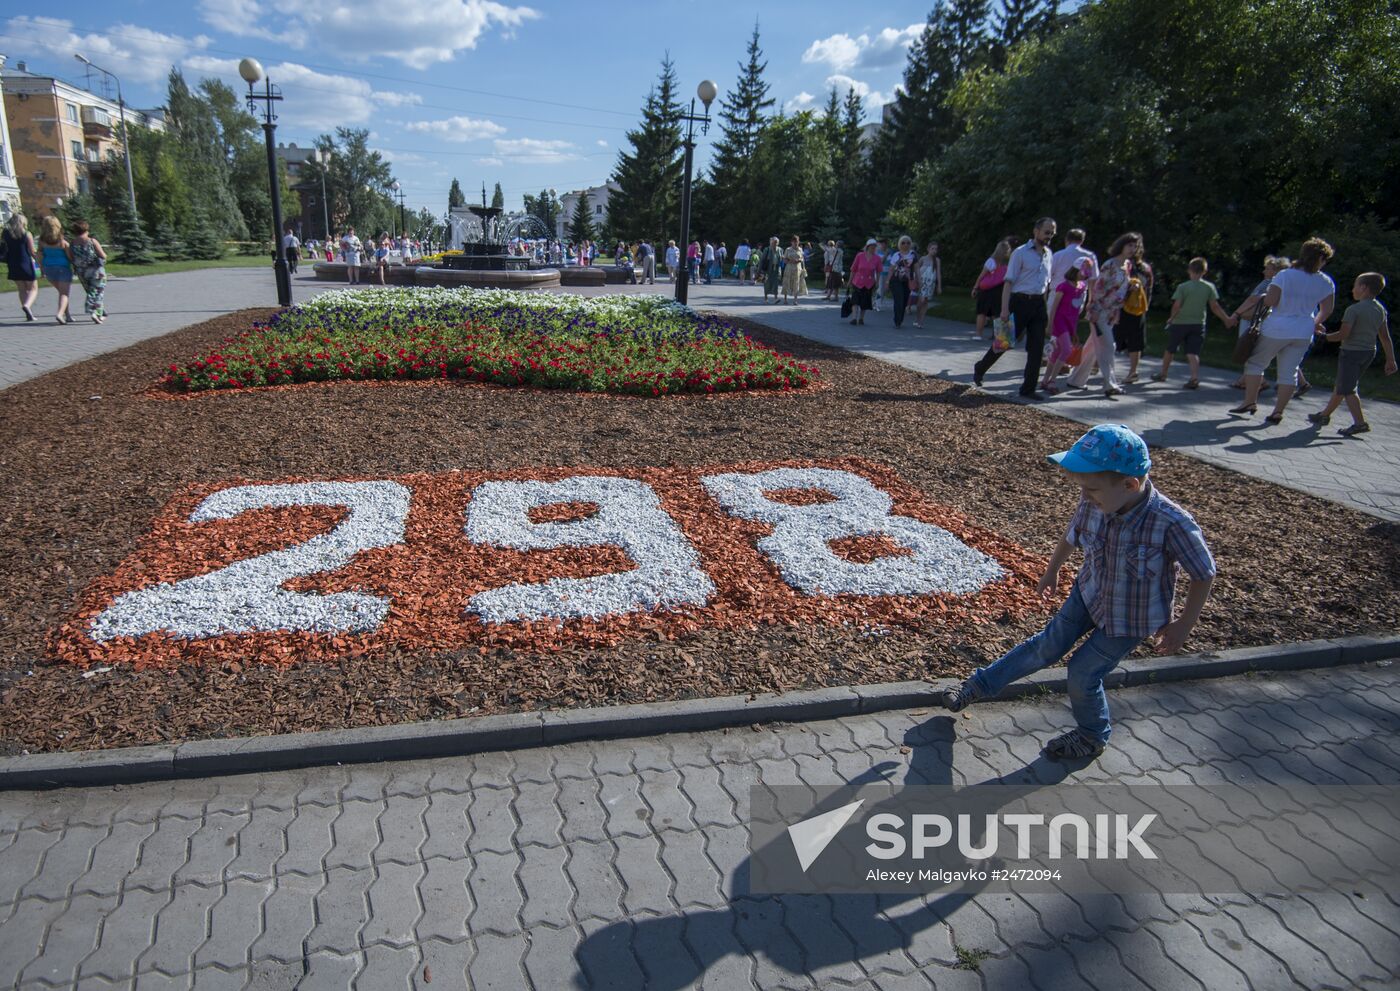 City Day celebrated in Omsk